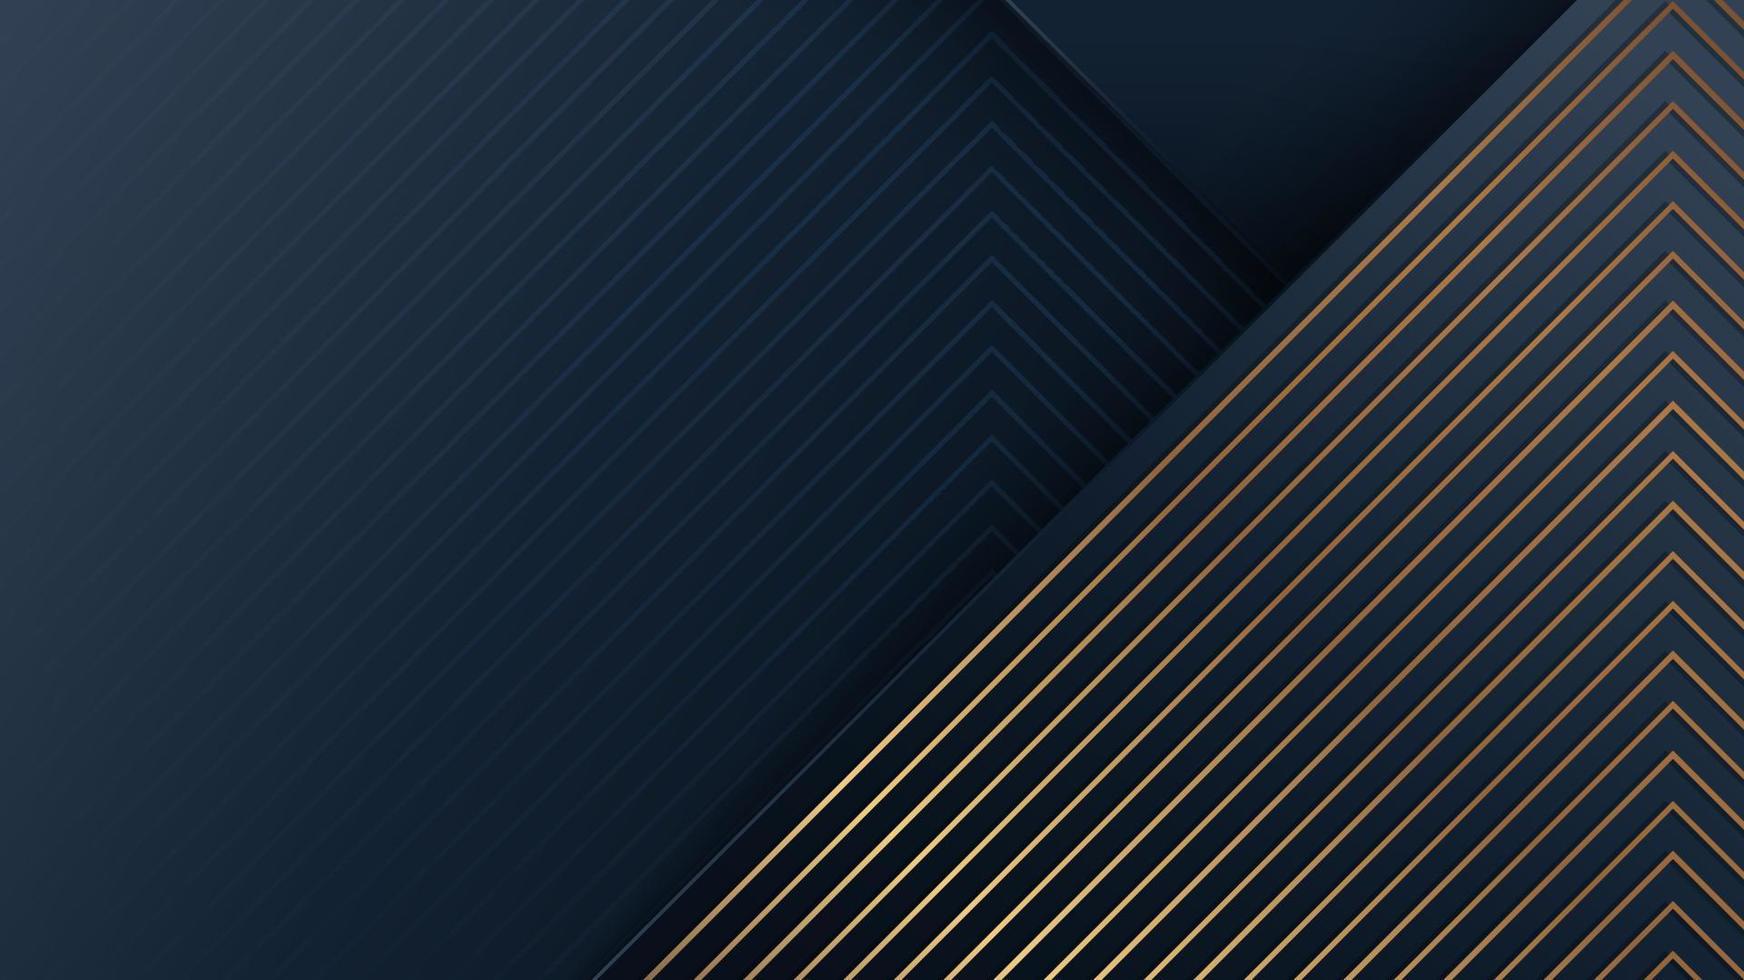 abstrakter moderner luxus hintergrund blaue streifen mit goldenen diagonalen linienmuster vektor